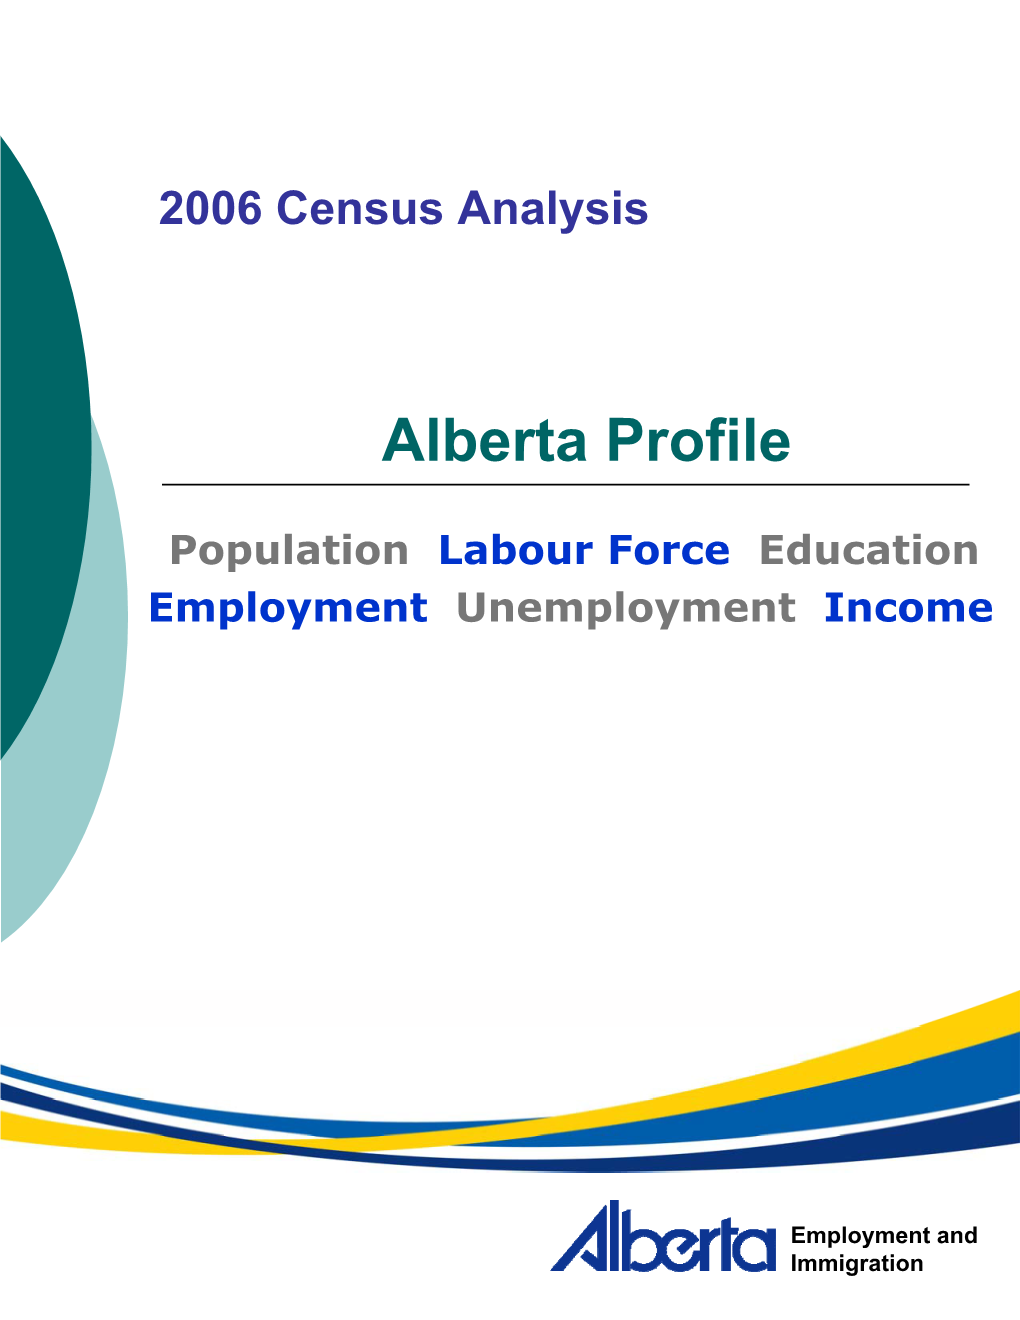 Alberta Profile